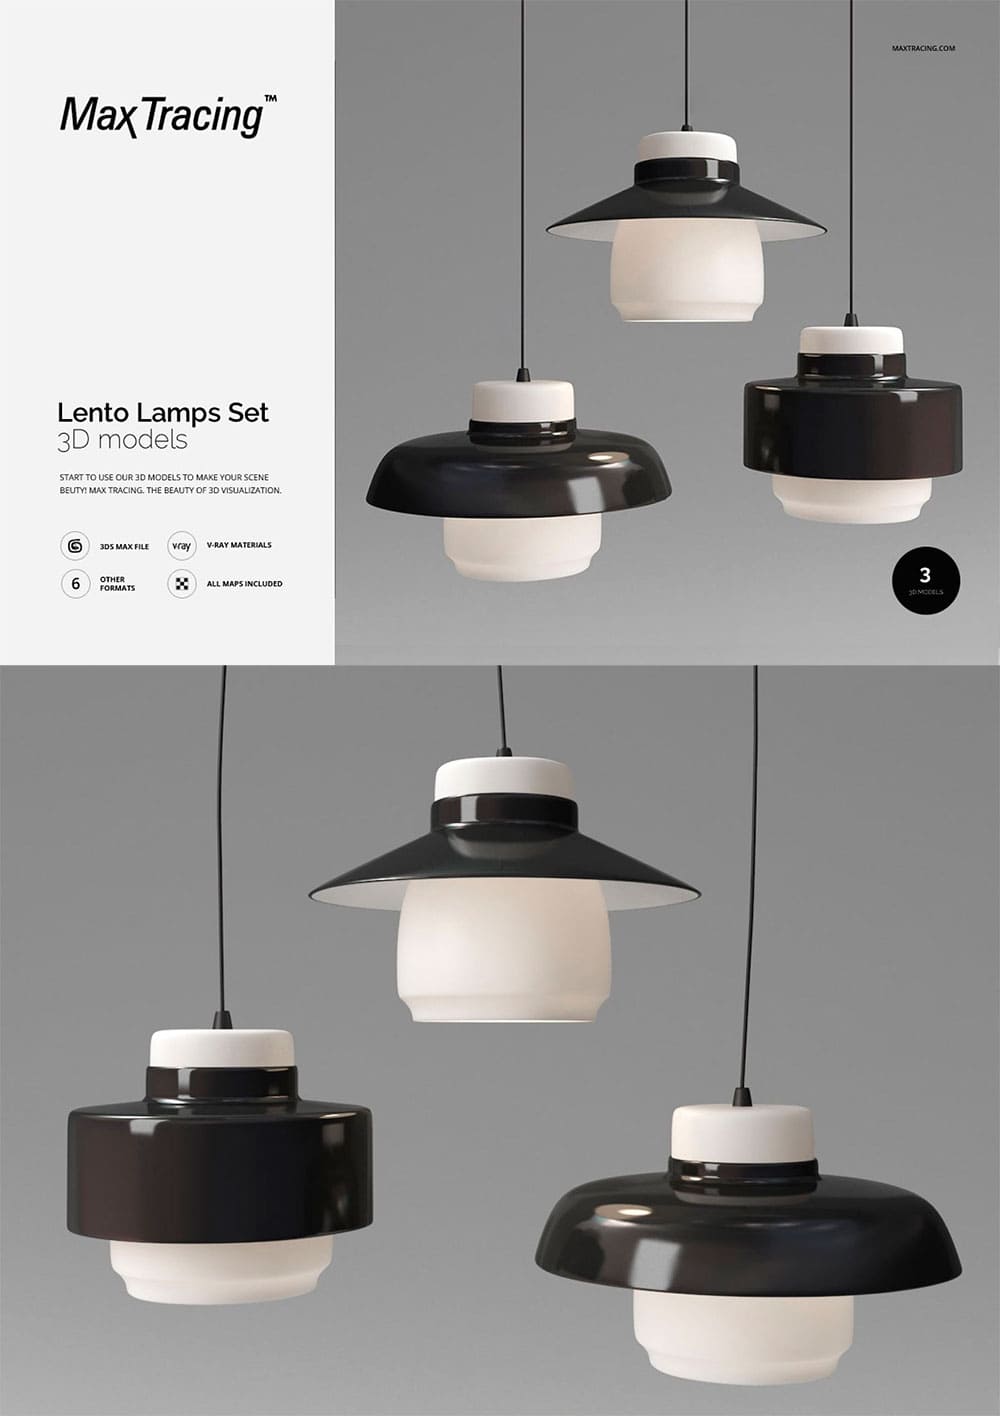 Lento lamps set, picture for pinterest.